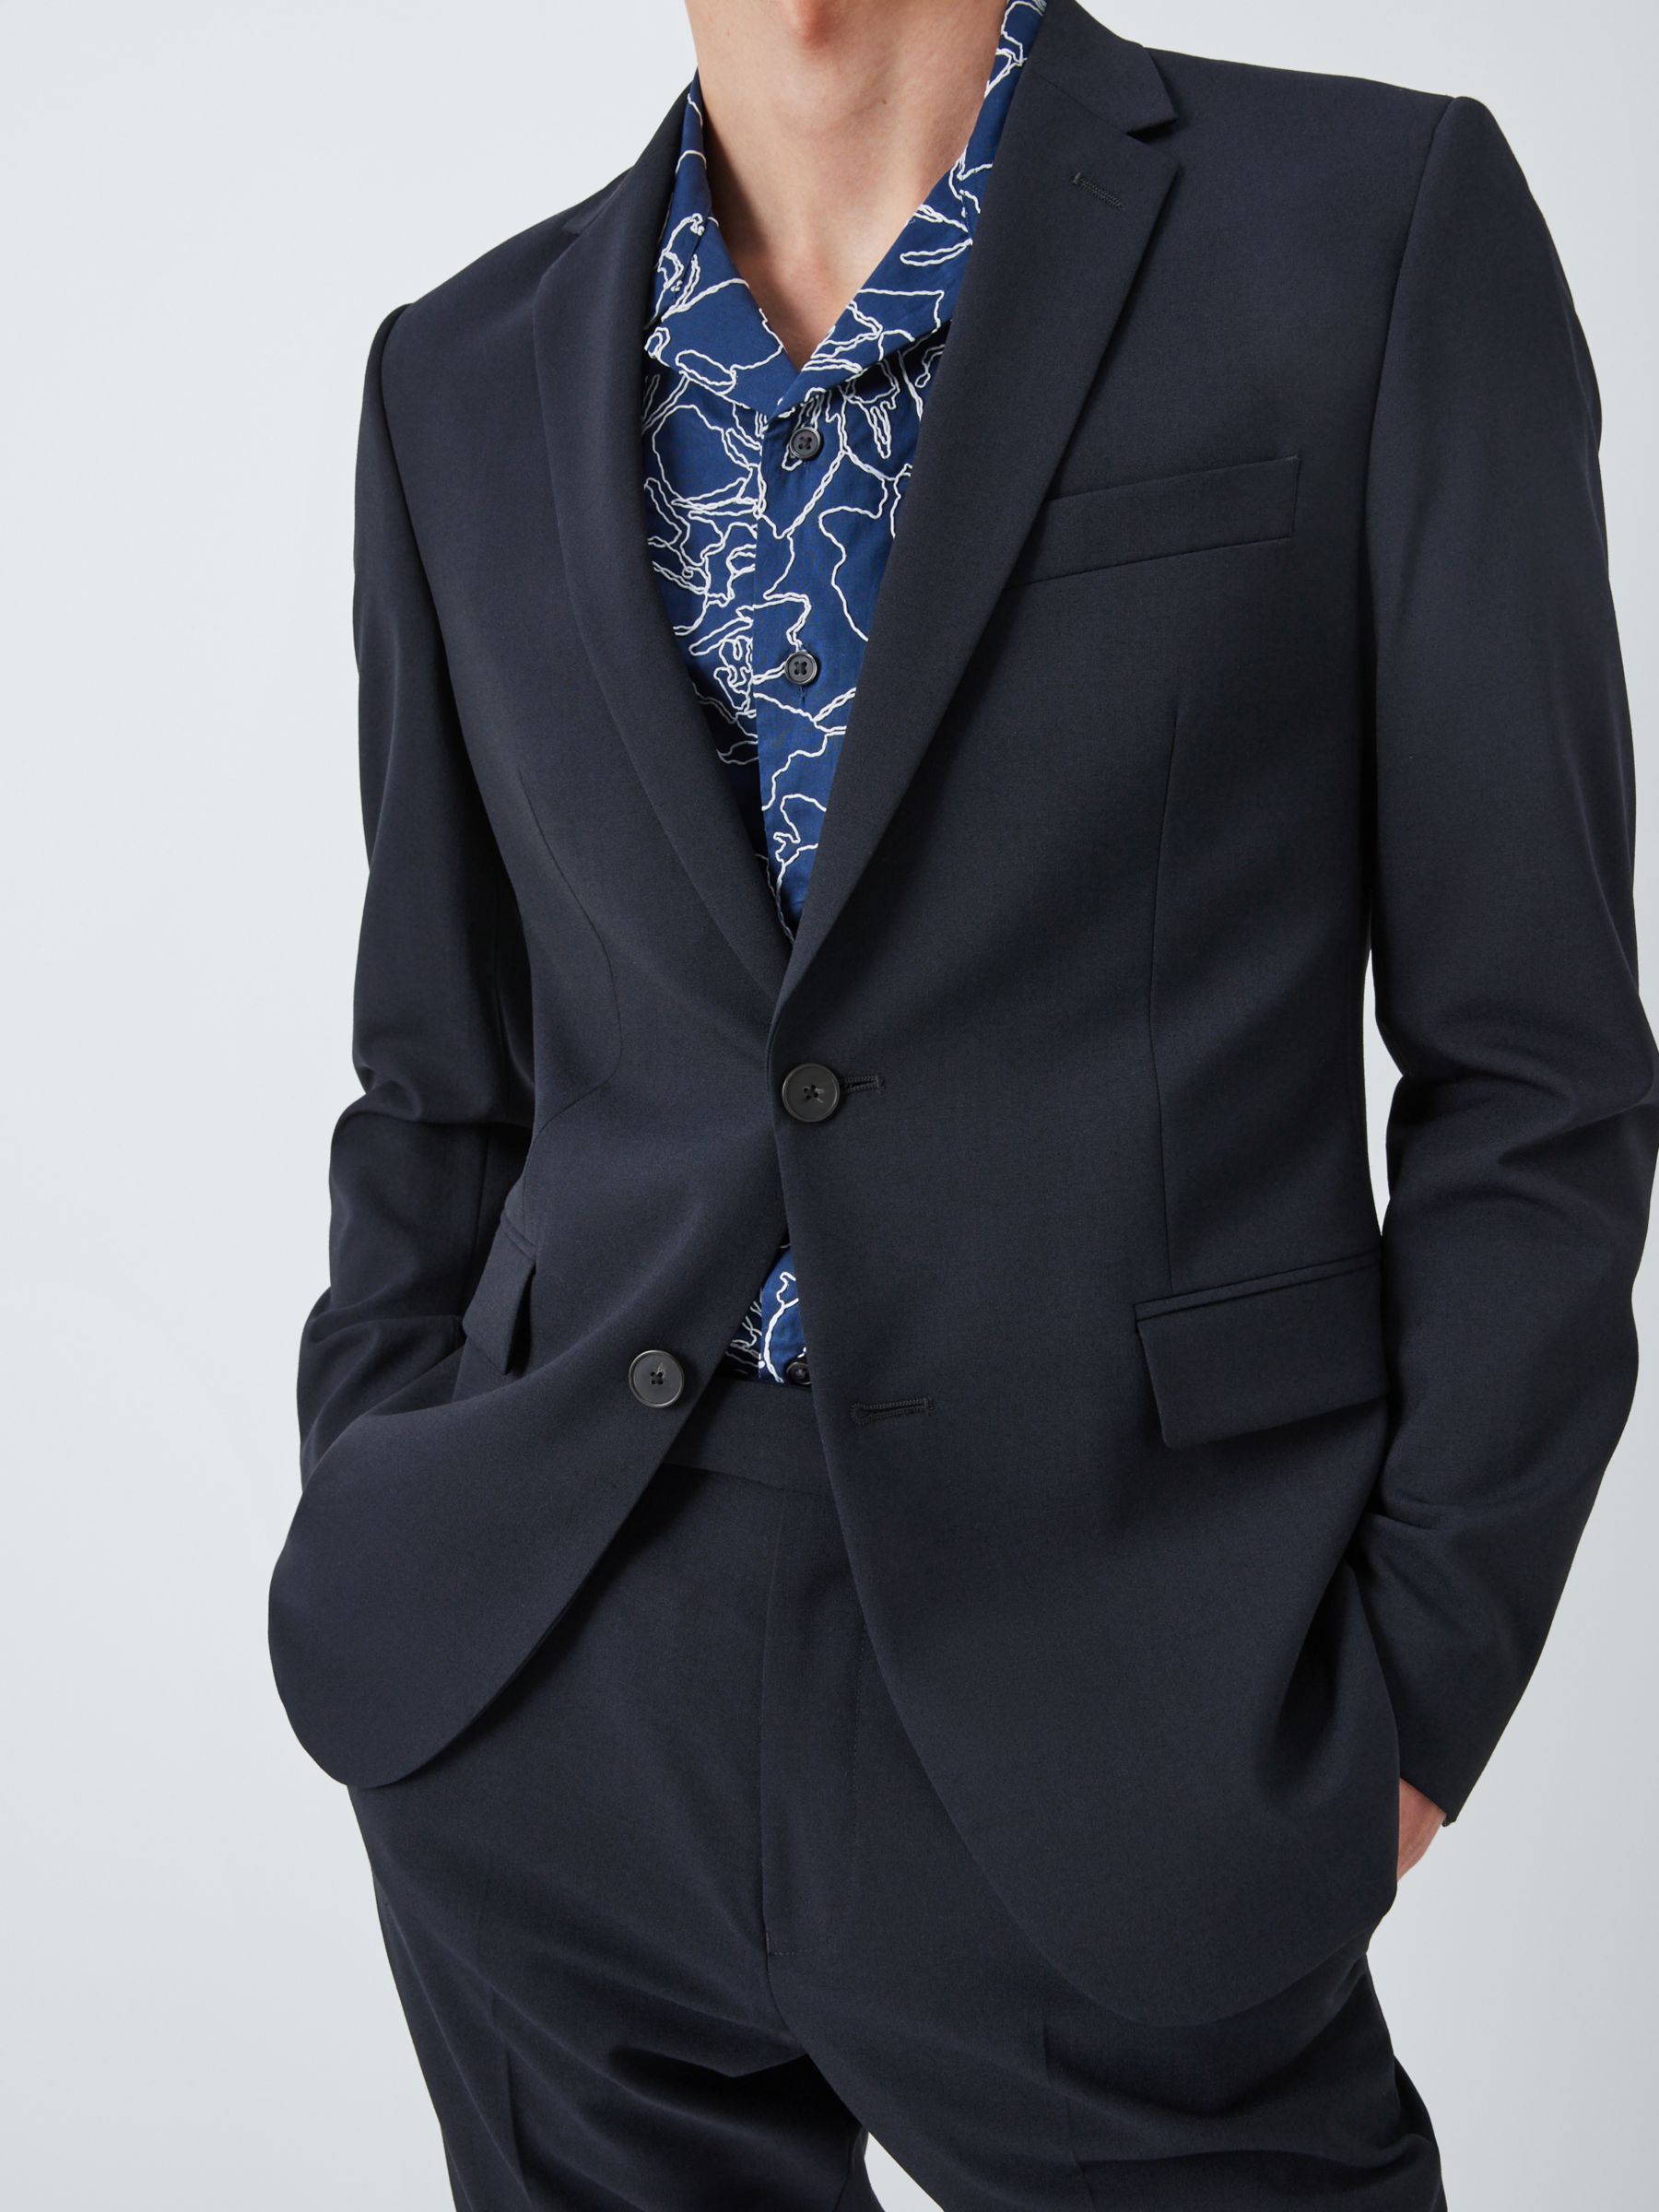 Kin Wool Blend Slim Fit Notch Lapel Suit Jacket, Navy, 36R